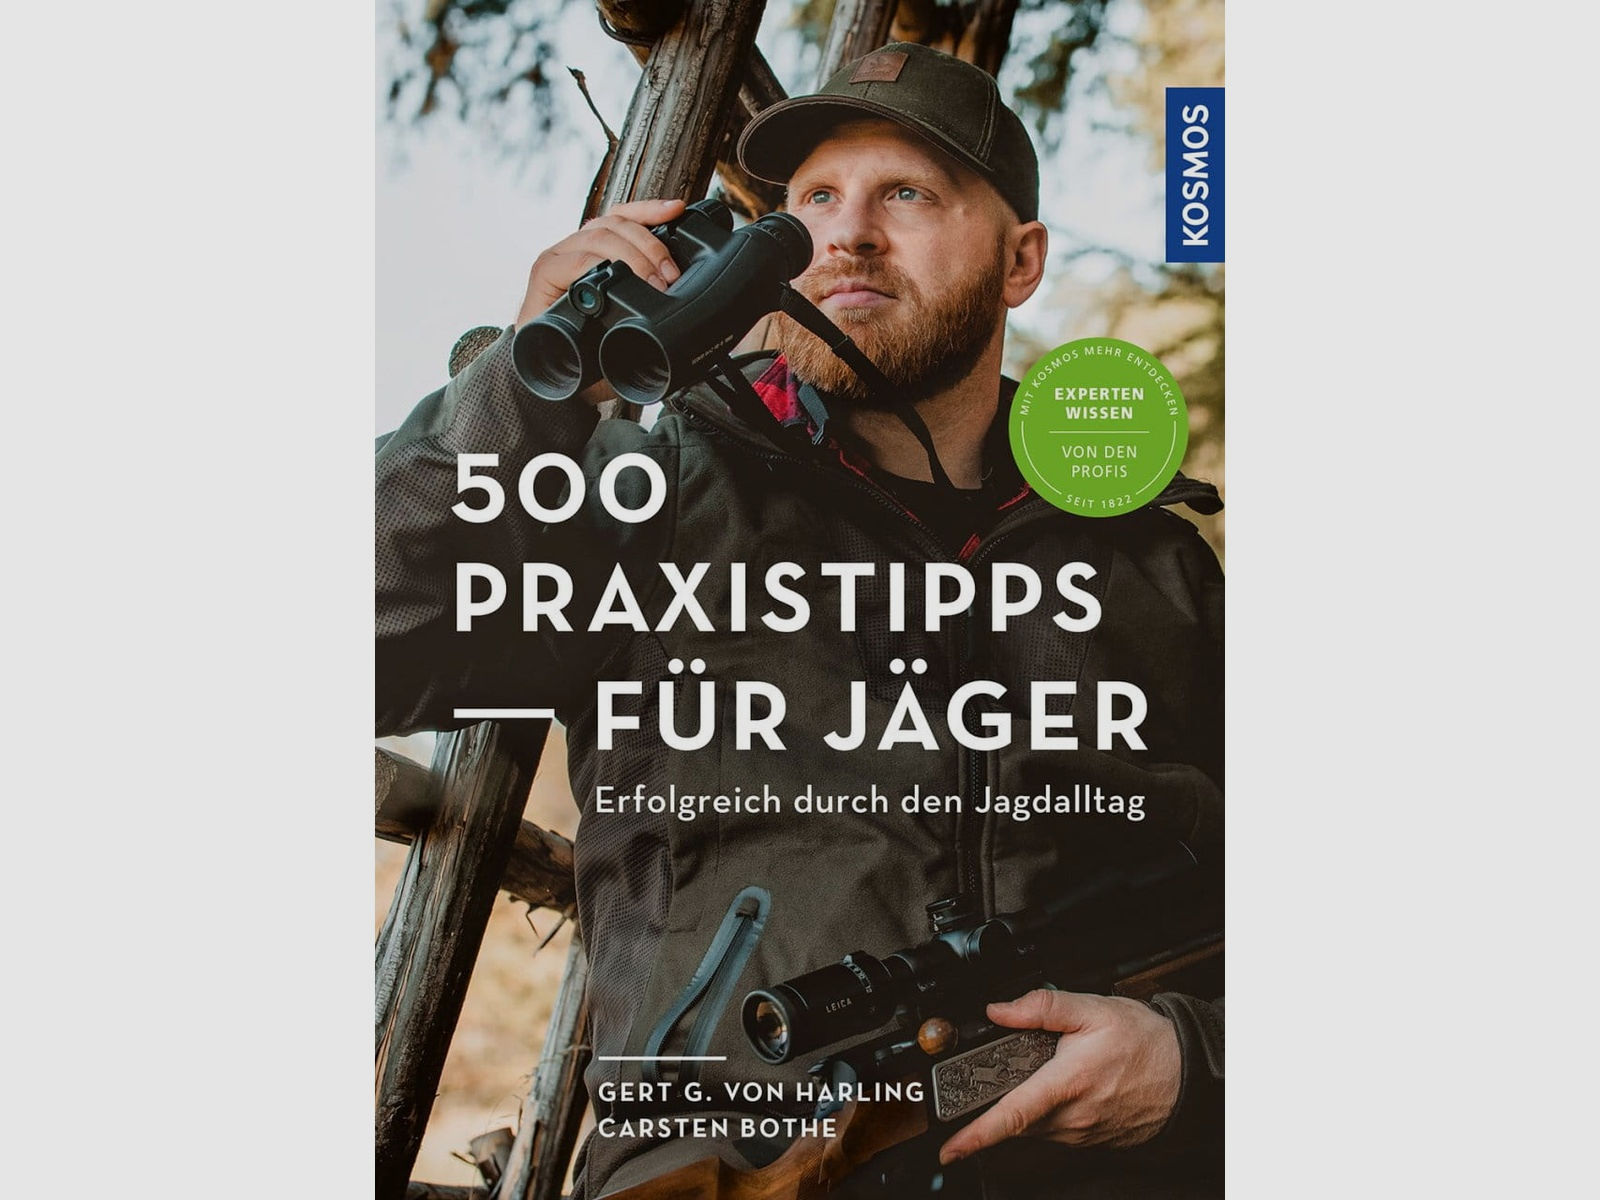 500 Praxistipps für Jäger - Erfolgreich durch den Jagdalltag